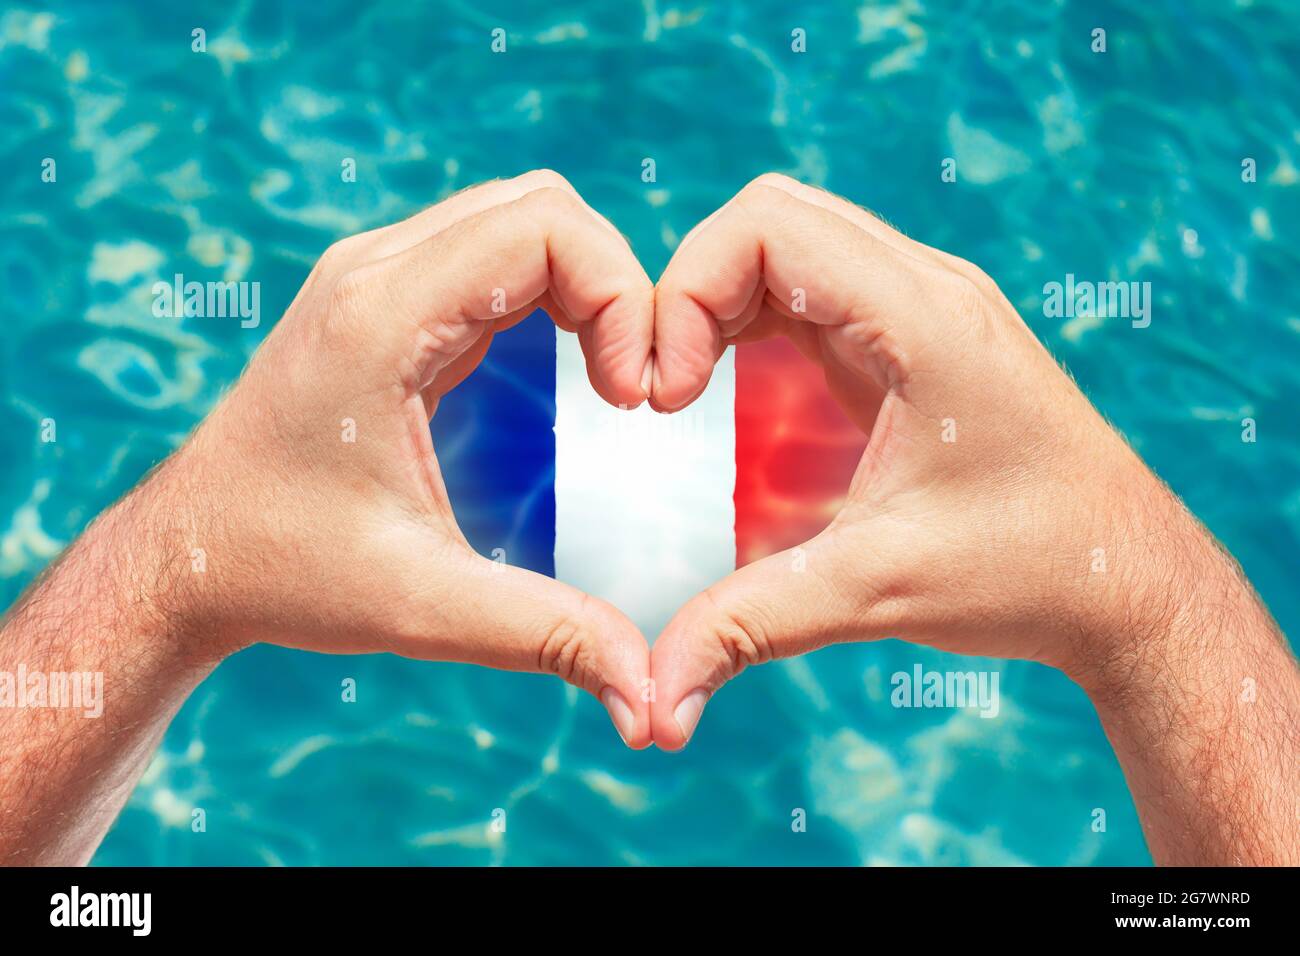 Sommerurlaub in Frankreich Konzept. Männliche Hände, die Herzform mit Frankreich-Flagge im Inneren bilden. Wunderschönes kristallklares türkisfarbenes Wasser mit Ätzstoffen. Stockfoto